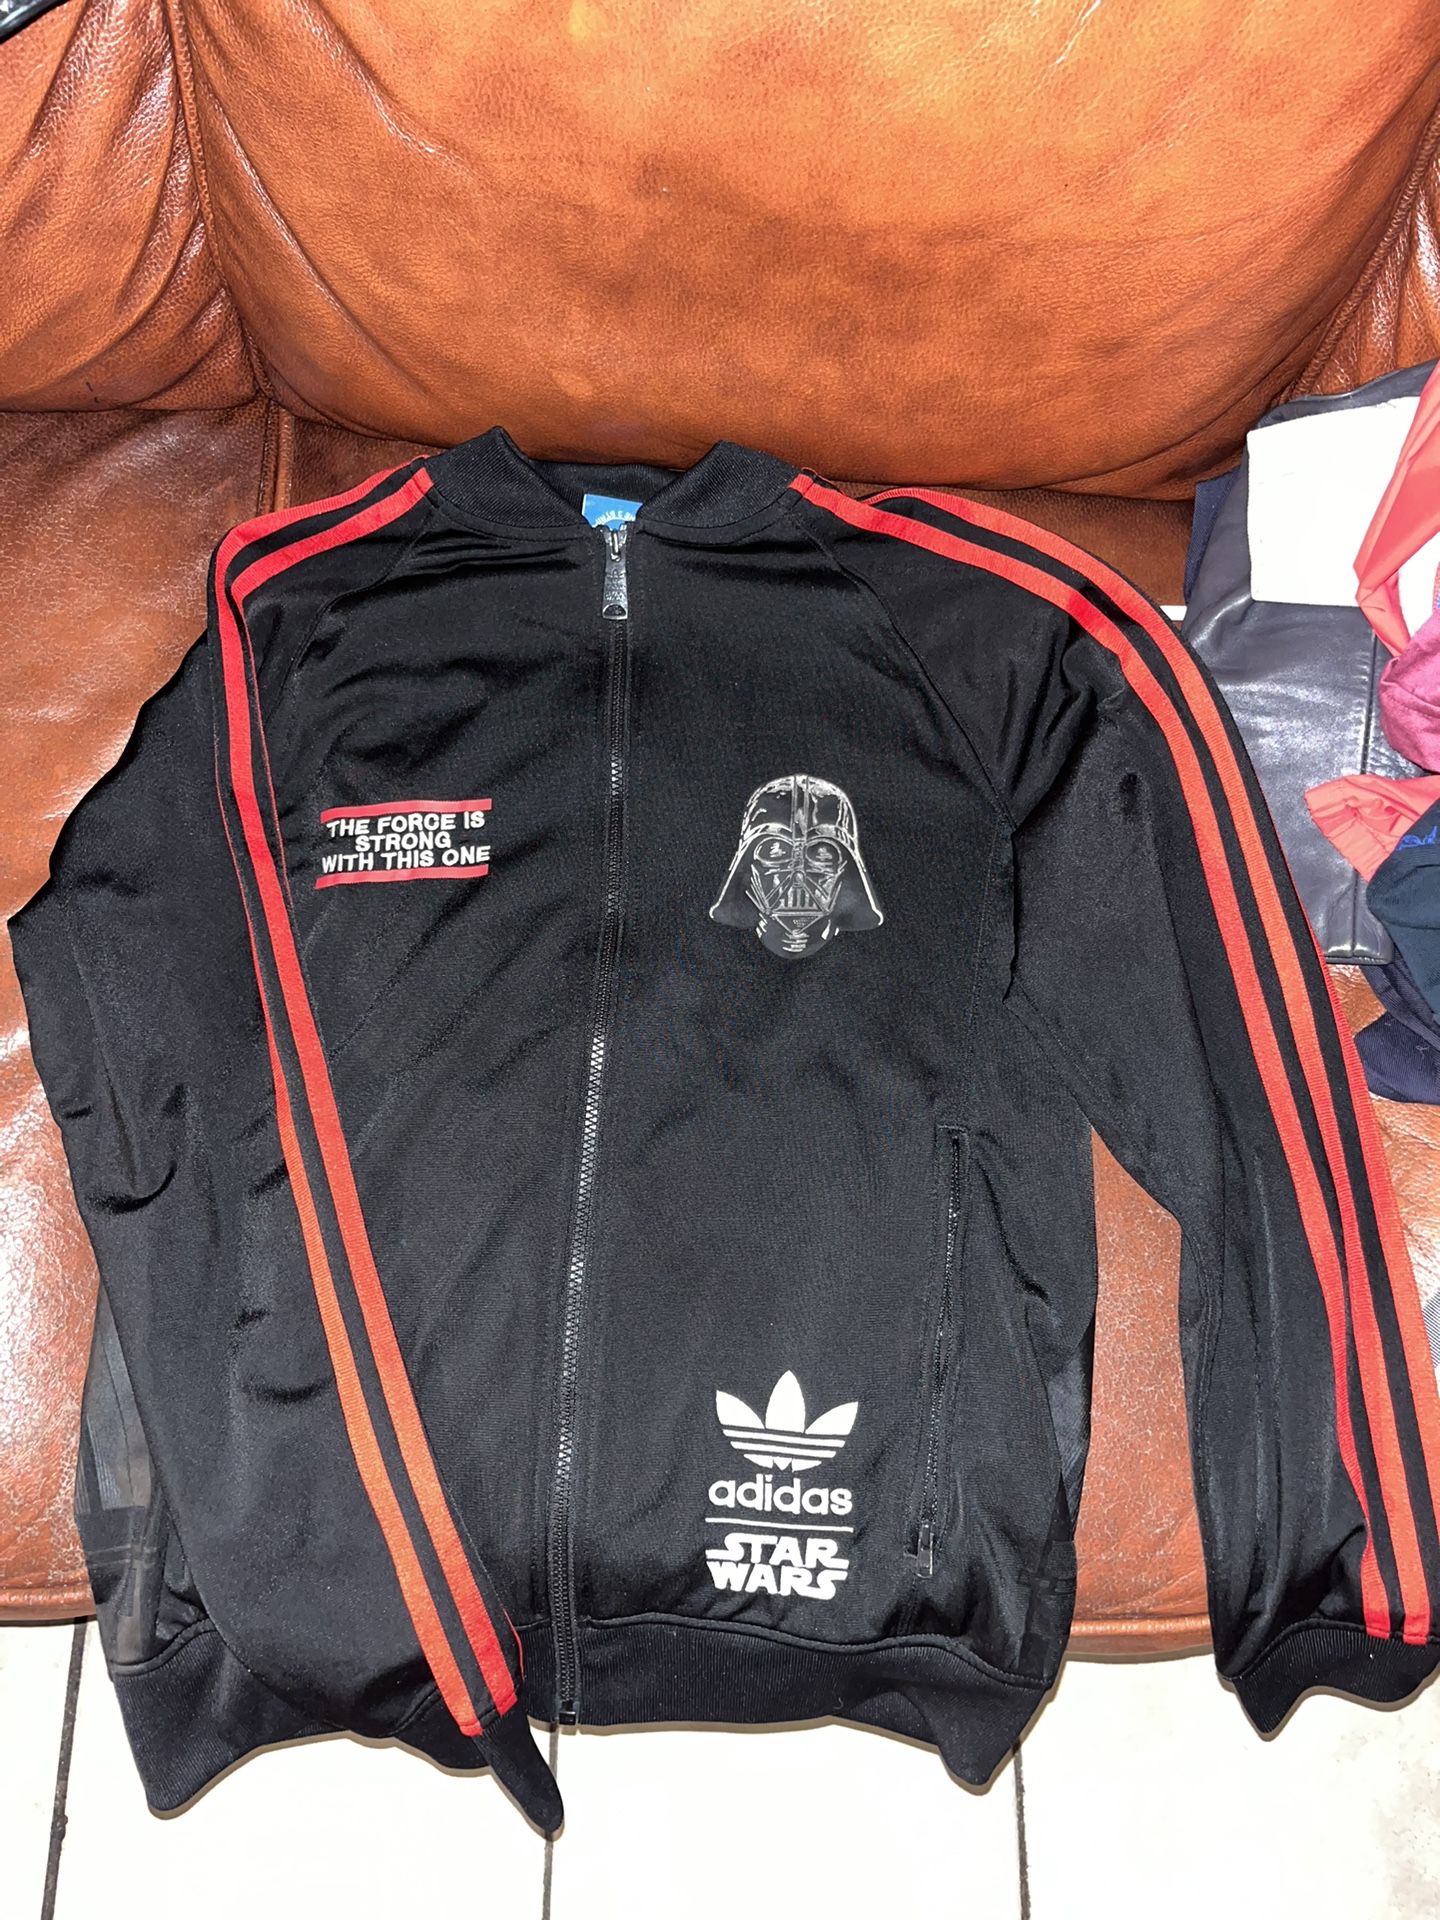 vamos a hacerlo colegio Influyente Sz Medium Adidas Star Wars Track Jacket for Sale in El Monte, CA - OfferUp